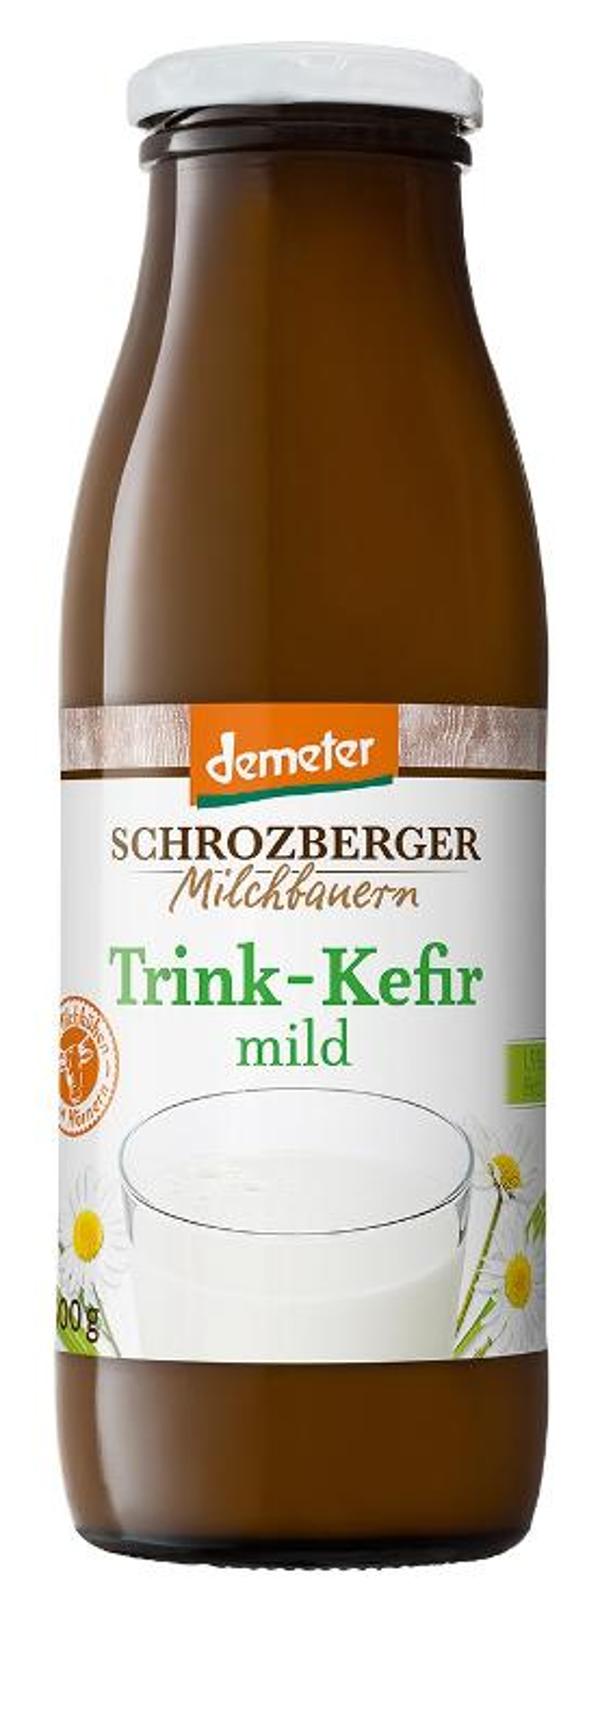 Produktfoto zu Trink-Kefir mild 1,5% 500g